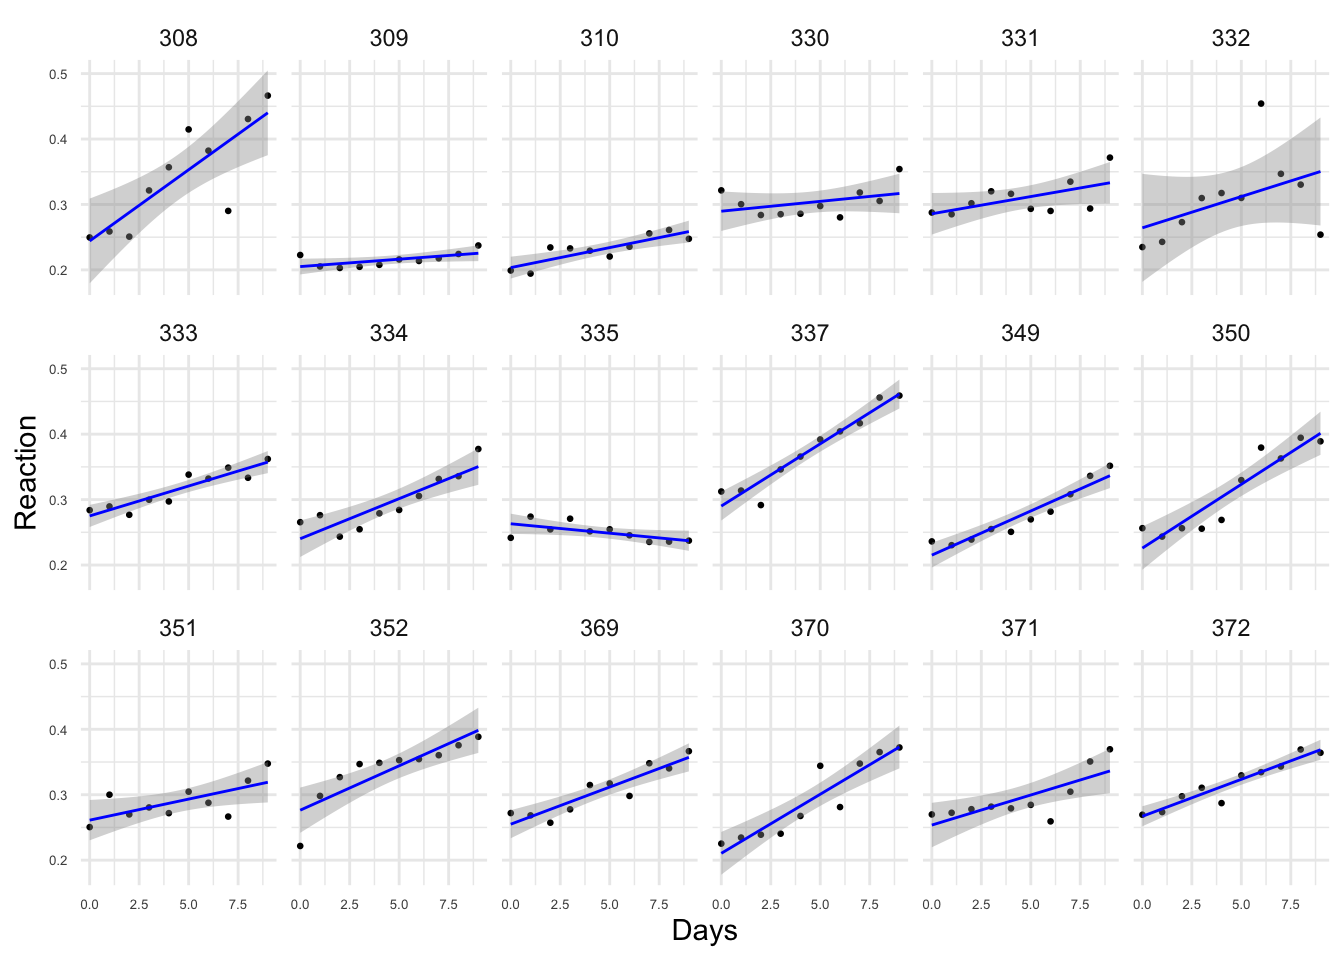 Tiempos de reacción en función del número de días con falta de sueño (sleepstudy) para los 18 sujetos en el estudio